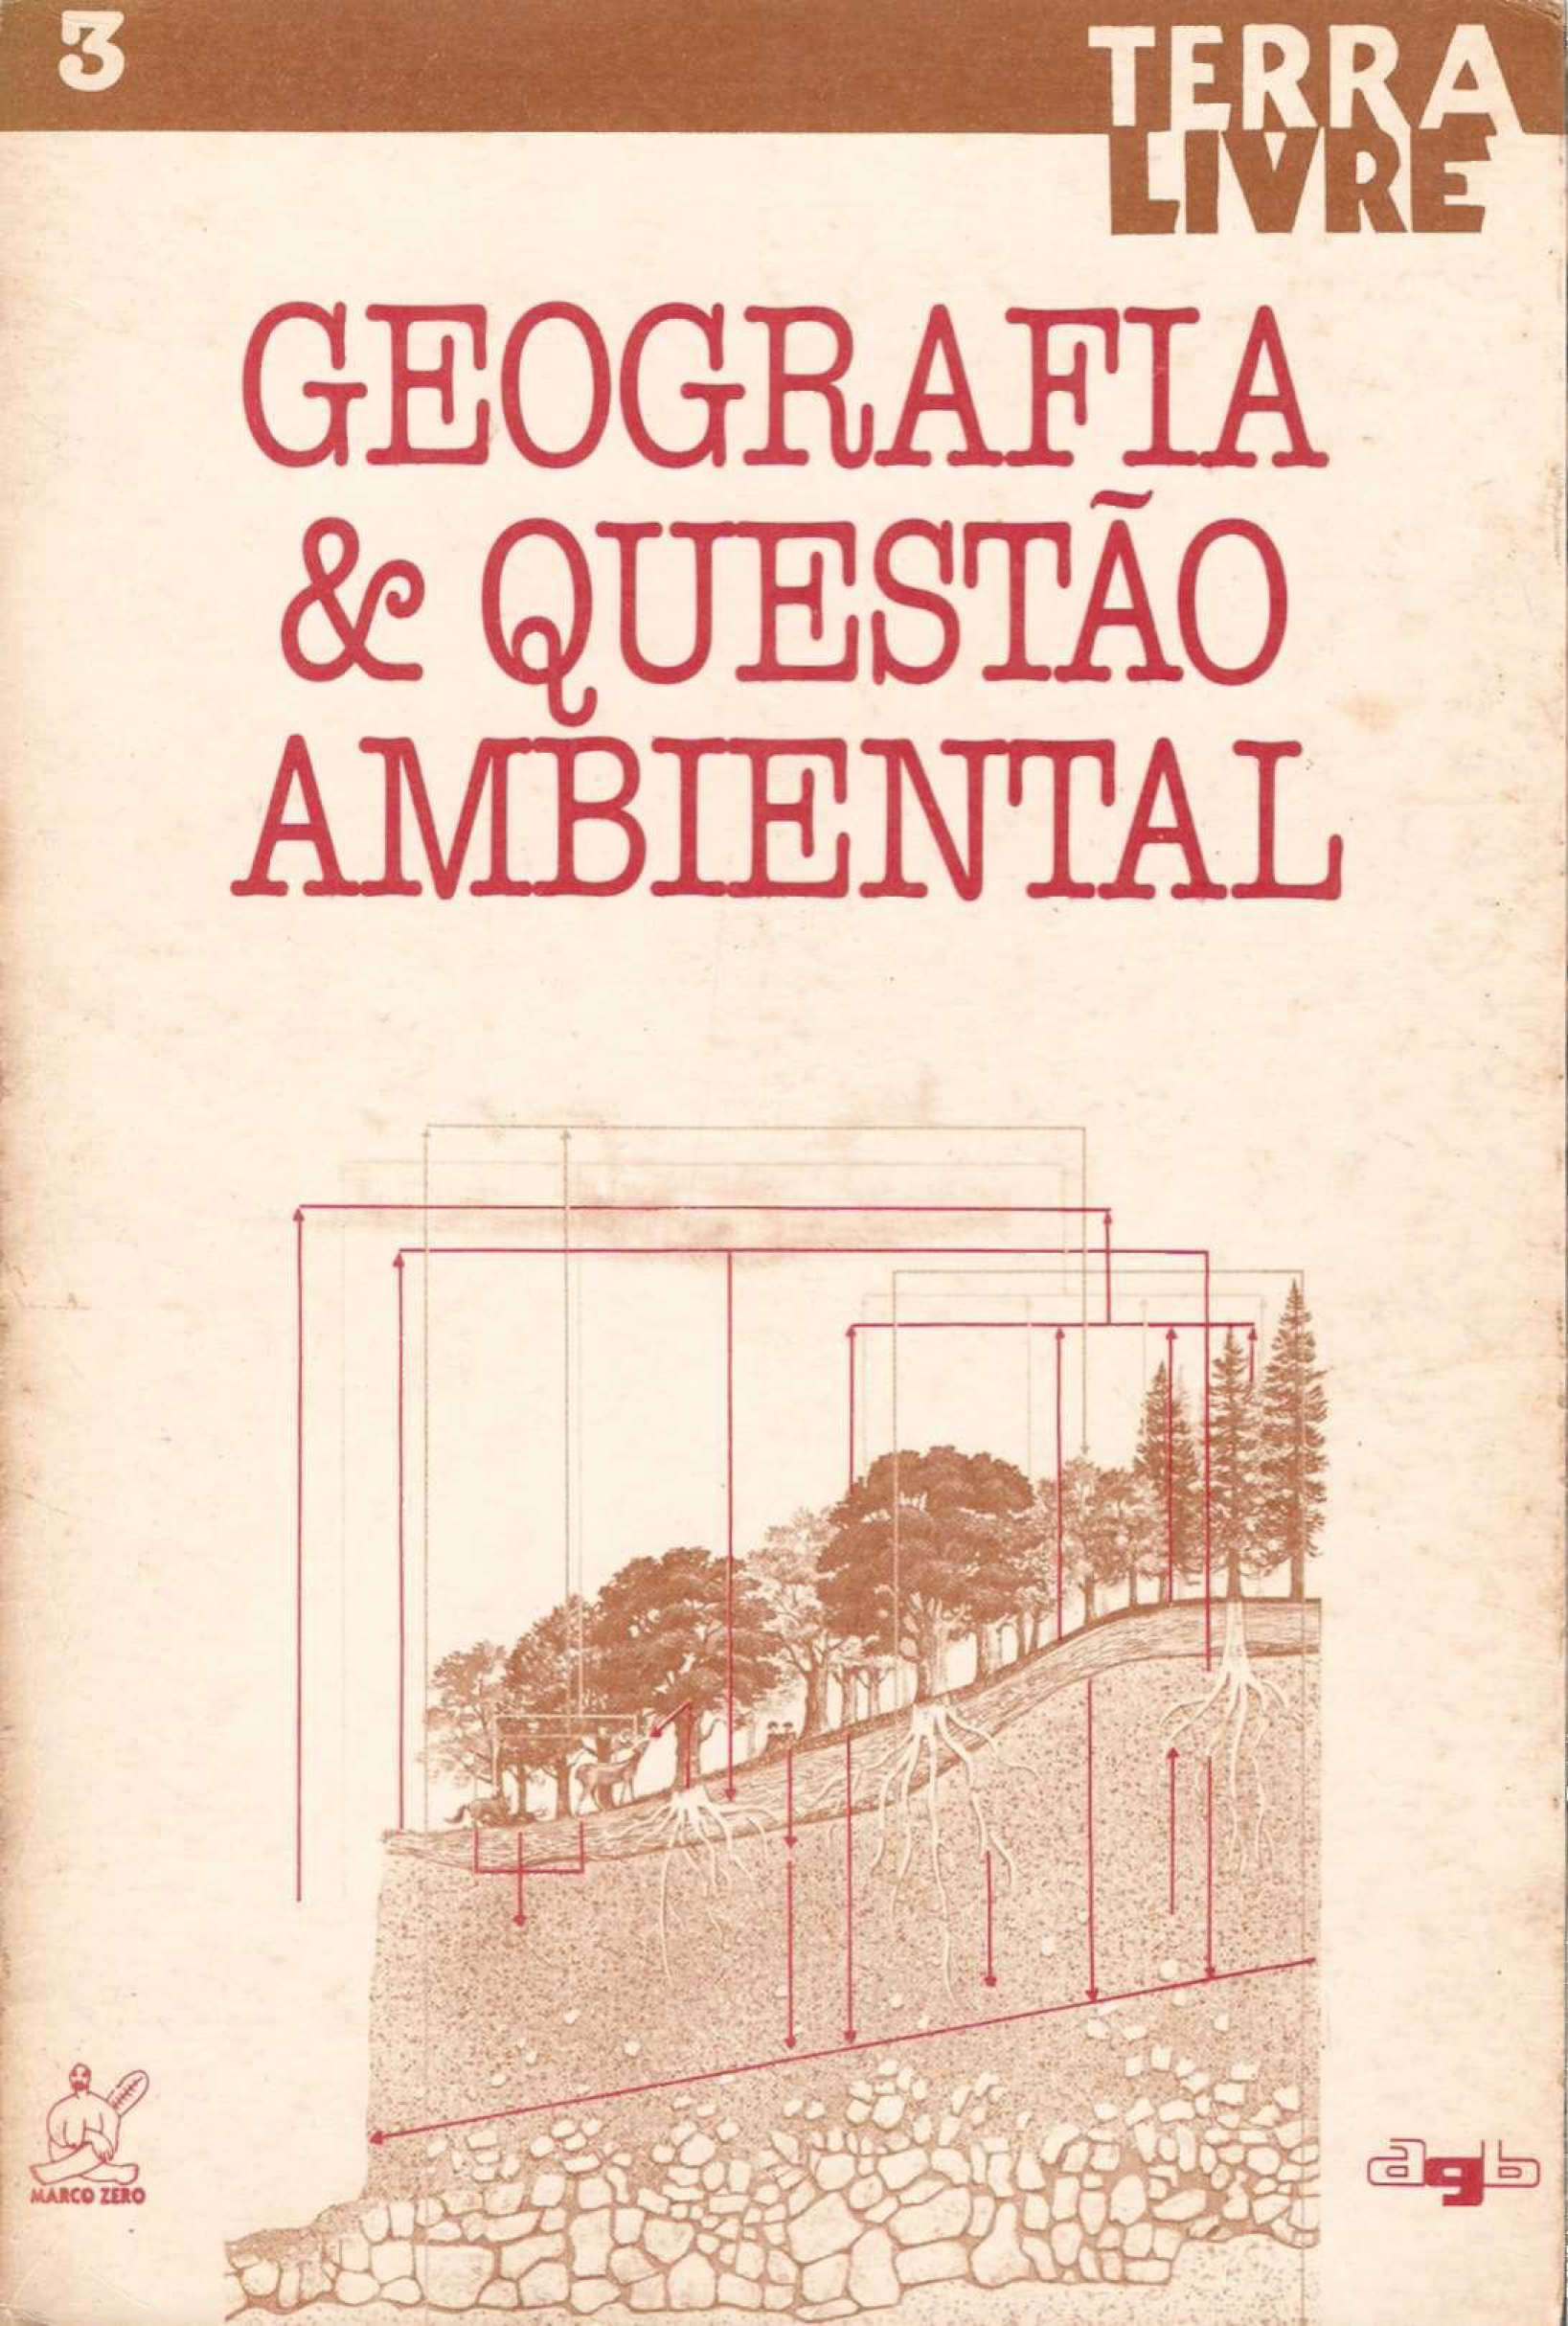 					Visualizar n. 3 (1988): GEOGRAFIA E QUESTÃO AMBIENTAL
				